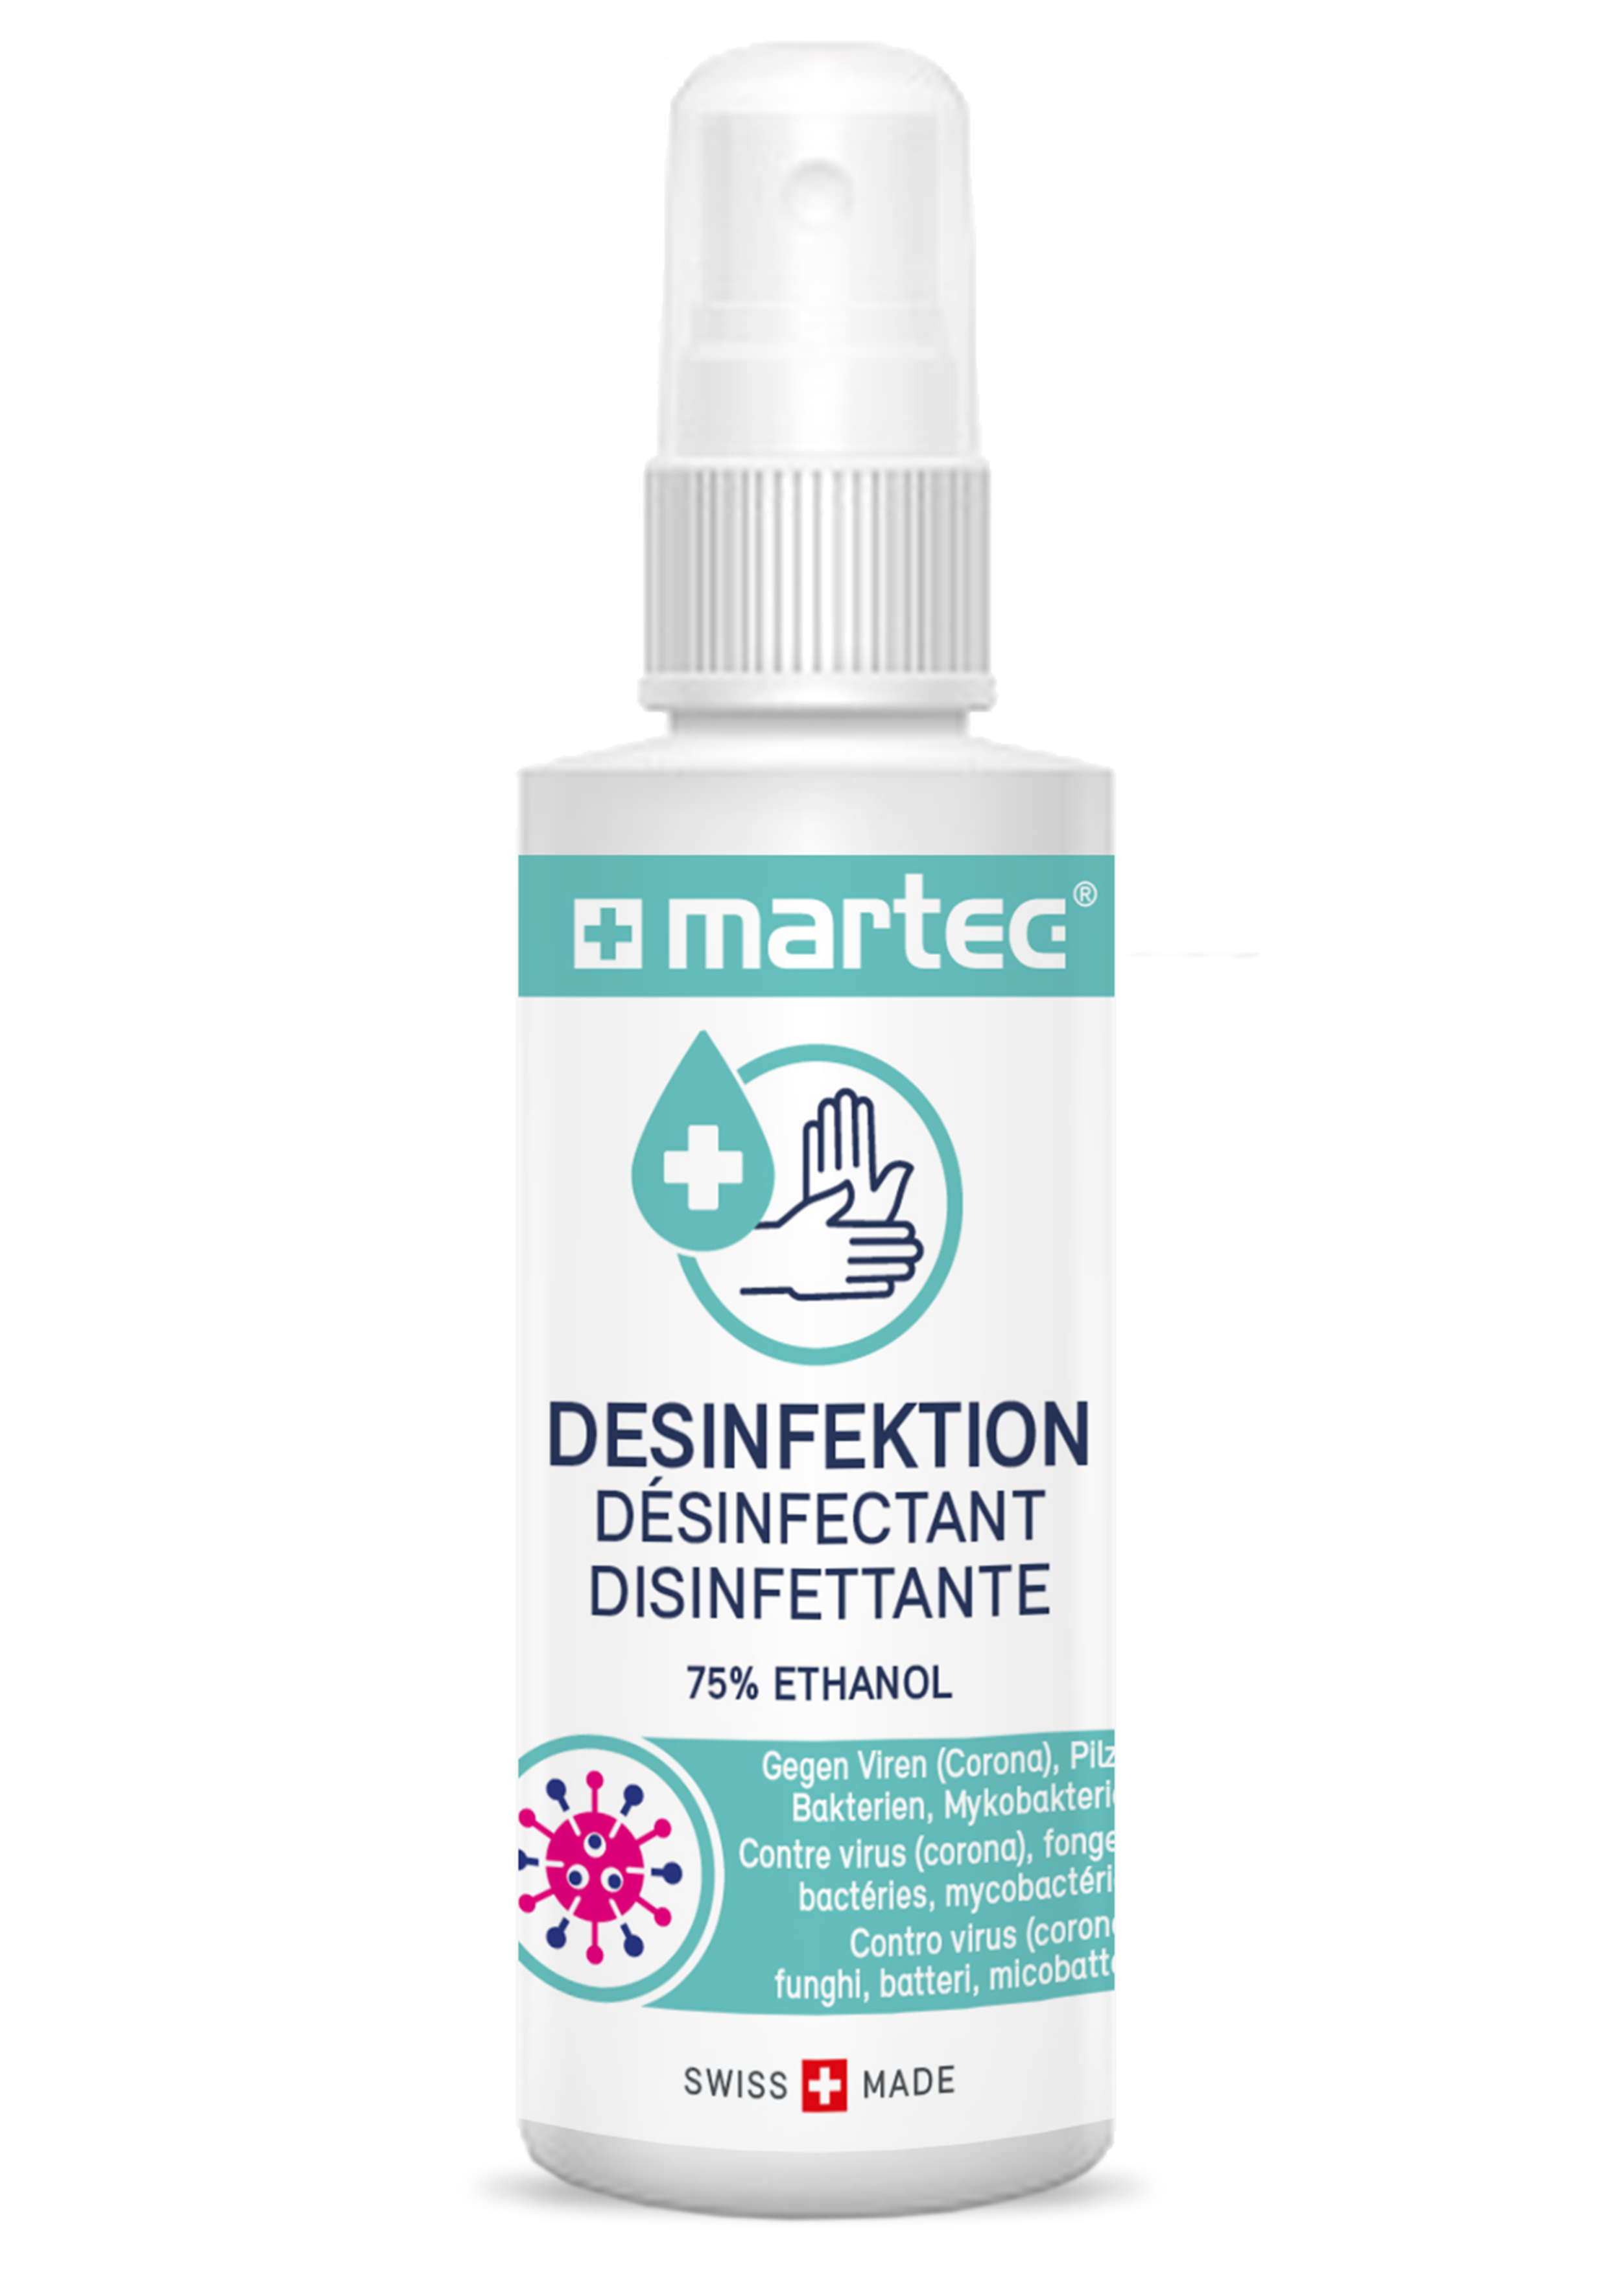 martec-handels-ag_martec-medical_martec-desinfektion